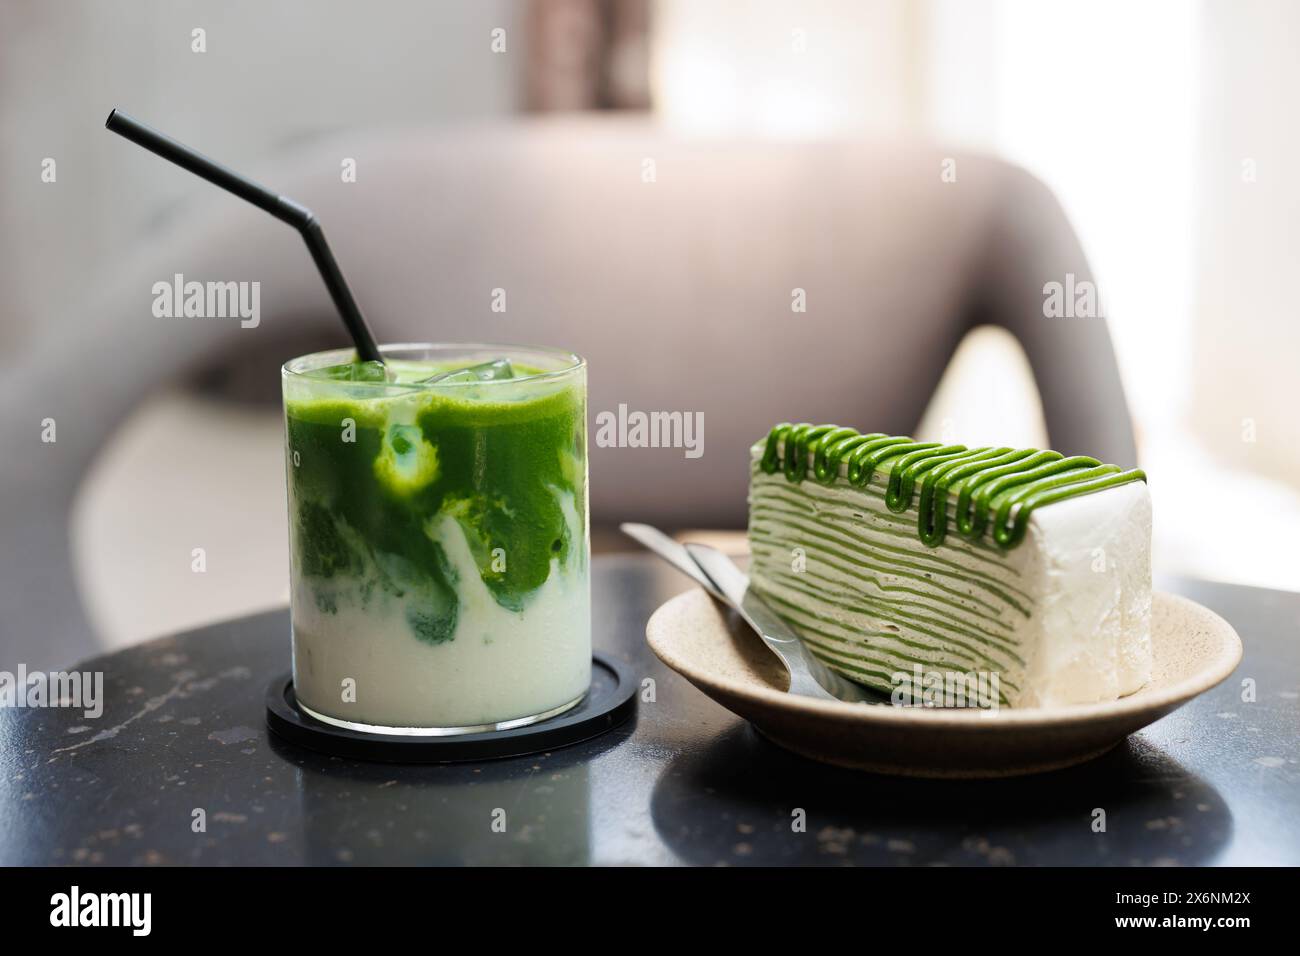 Matcha Green Tea Süßigkeiten und Getränke werden im Café serviert, grüner Kreppkuchen und grüner Eistee in der Nähe auf dem Tisch. Stockfoto